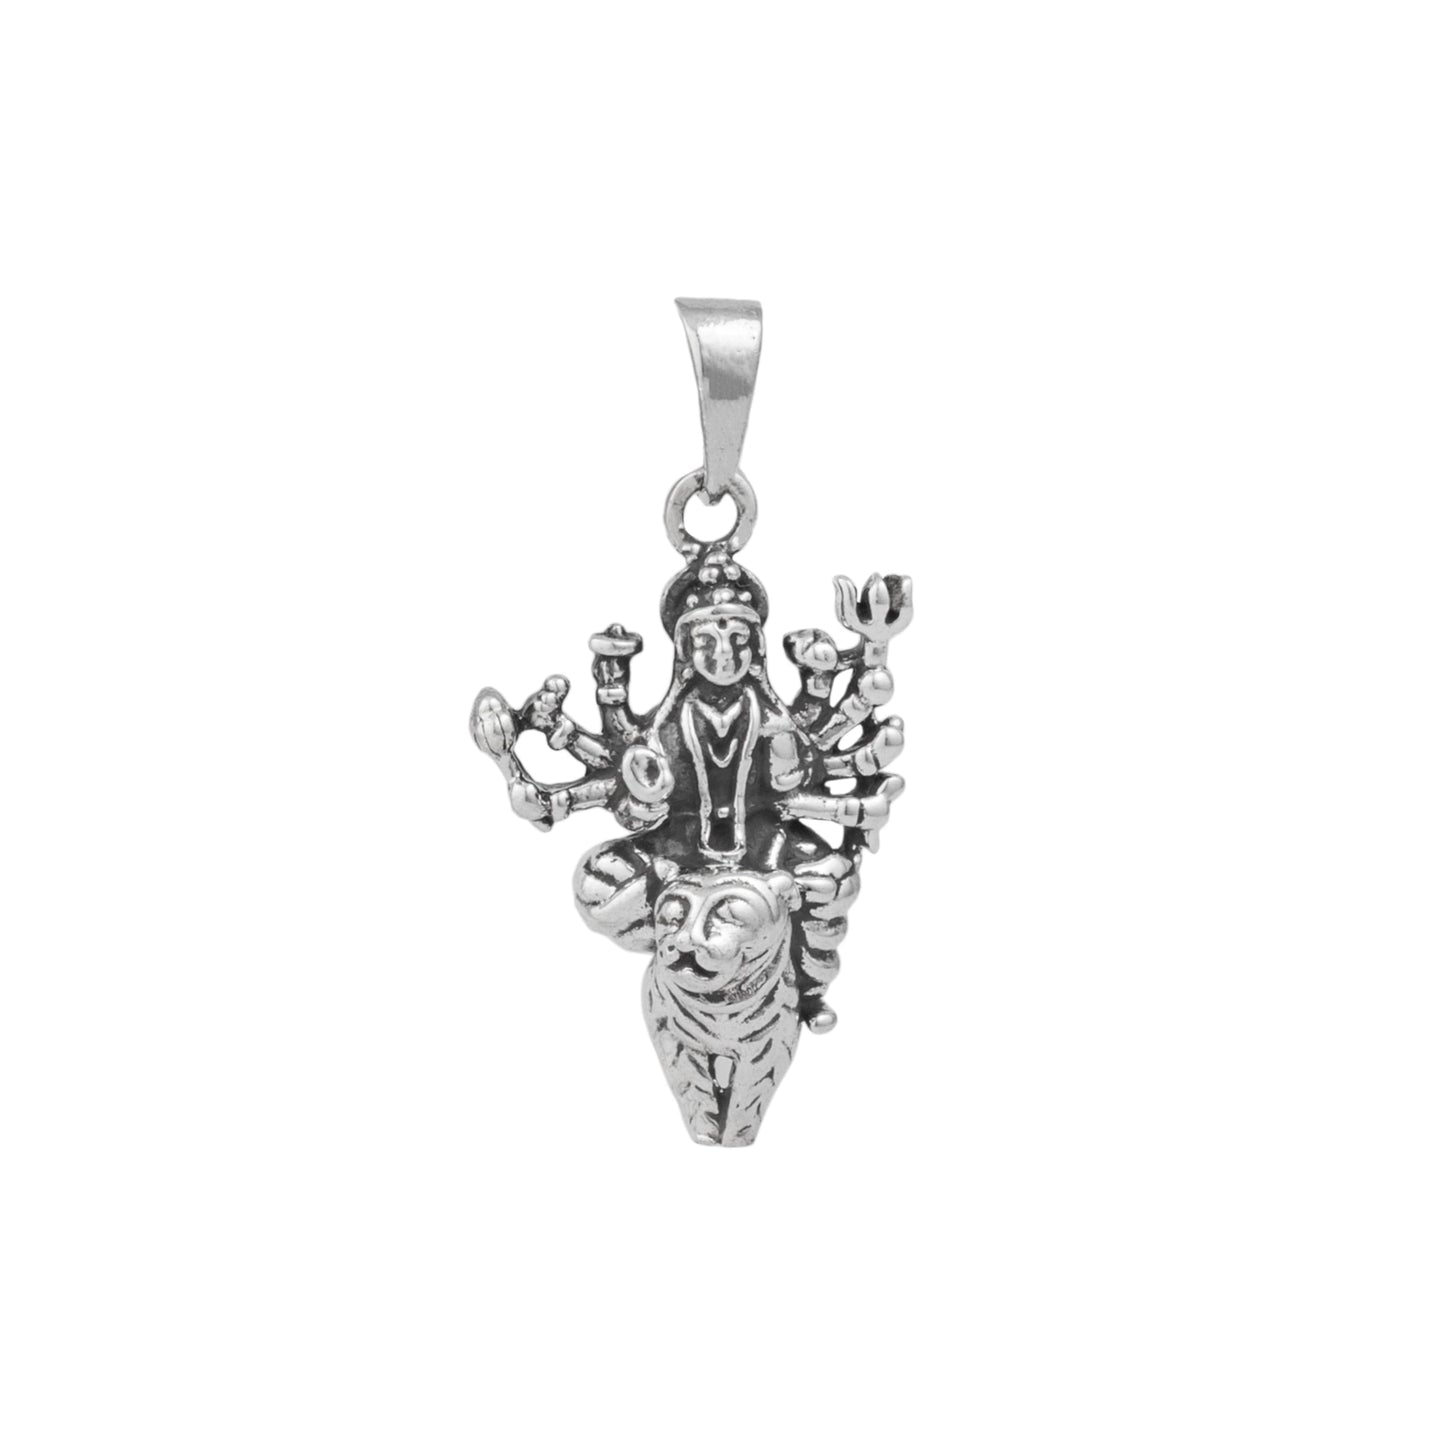 Pleasing Durga Silver Pendant